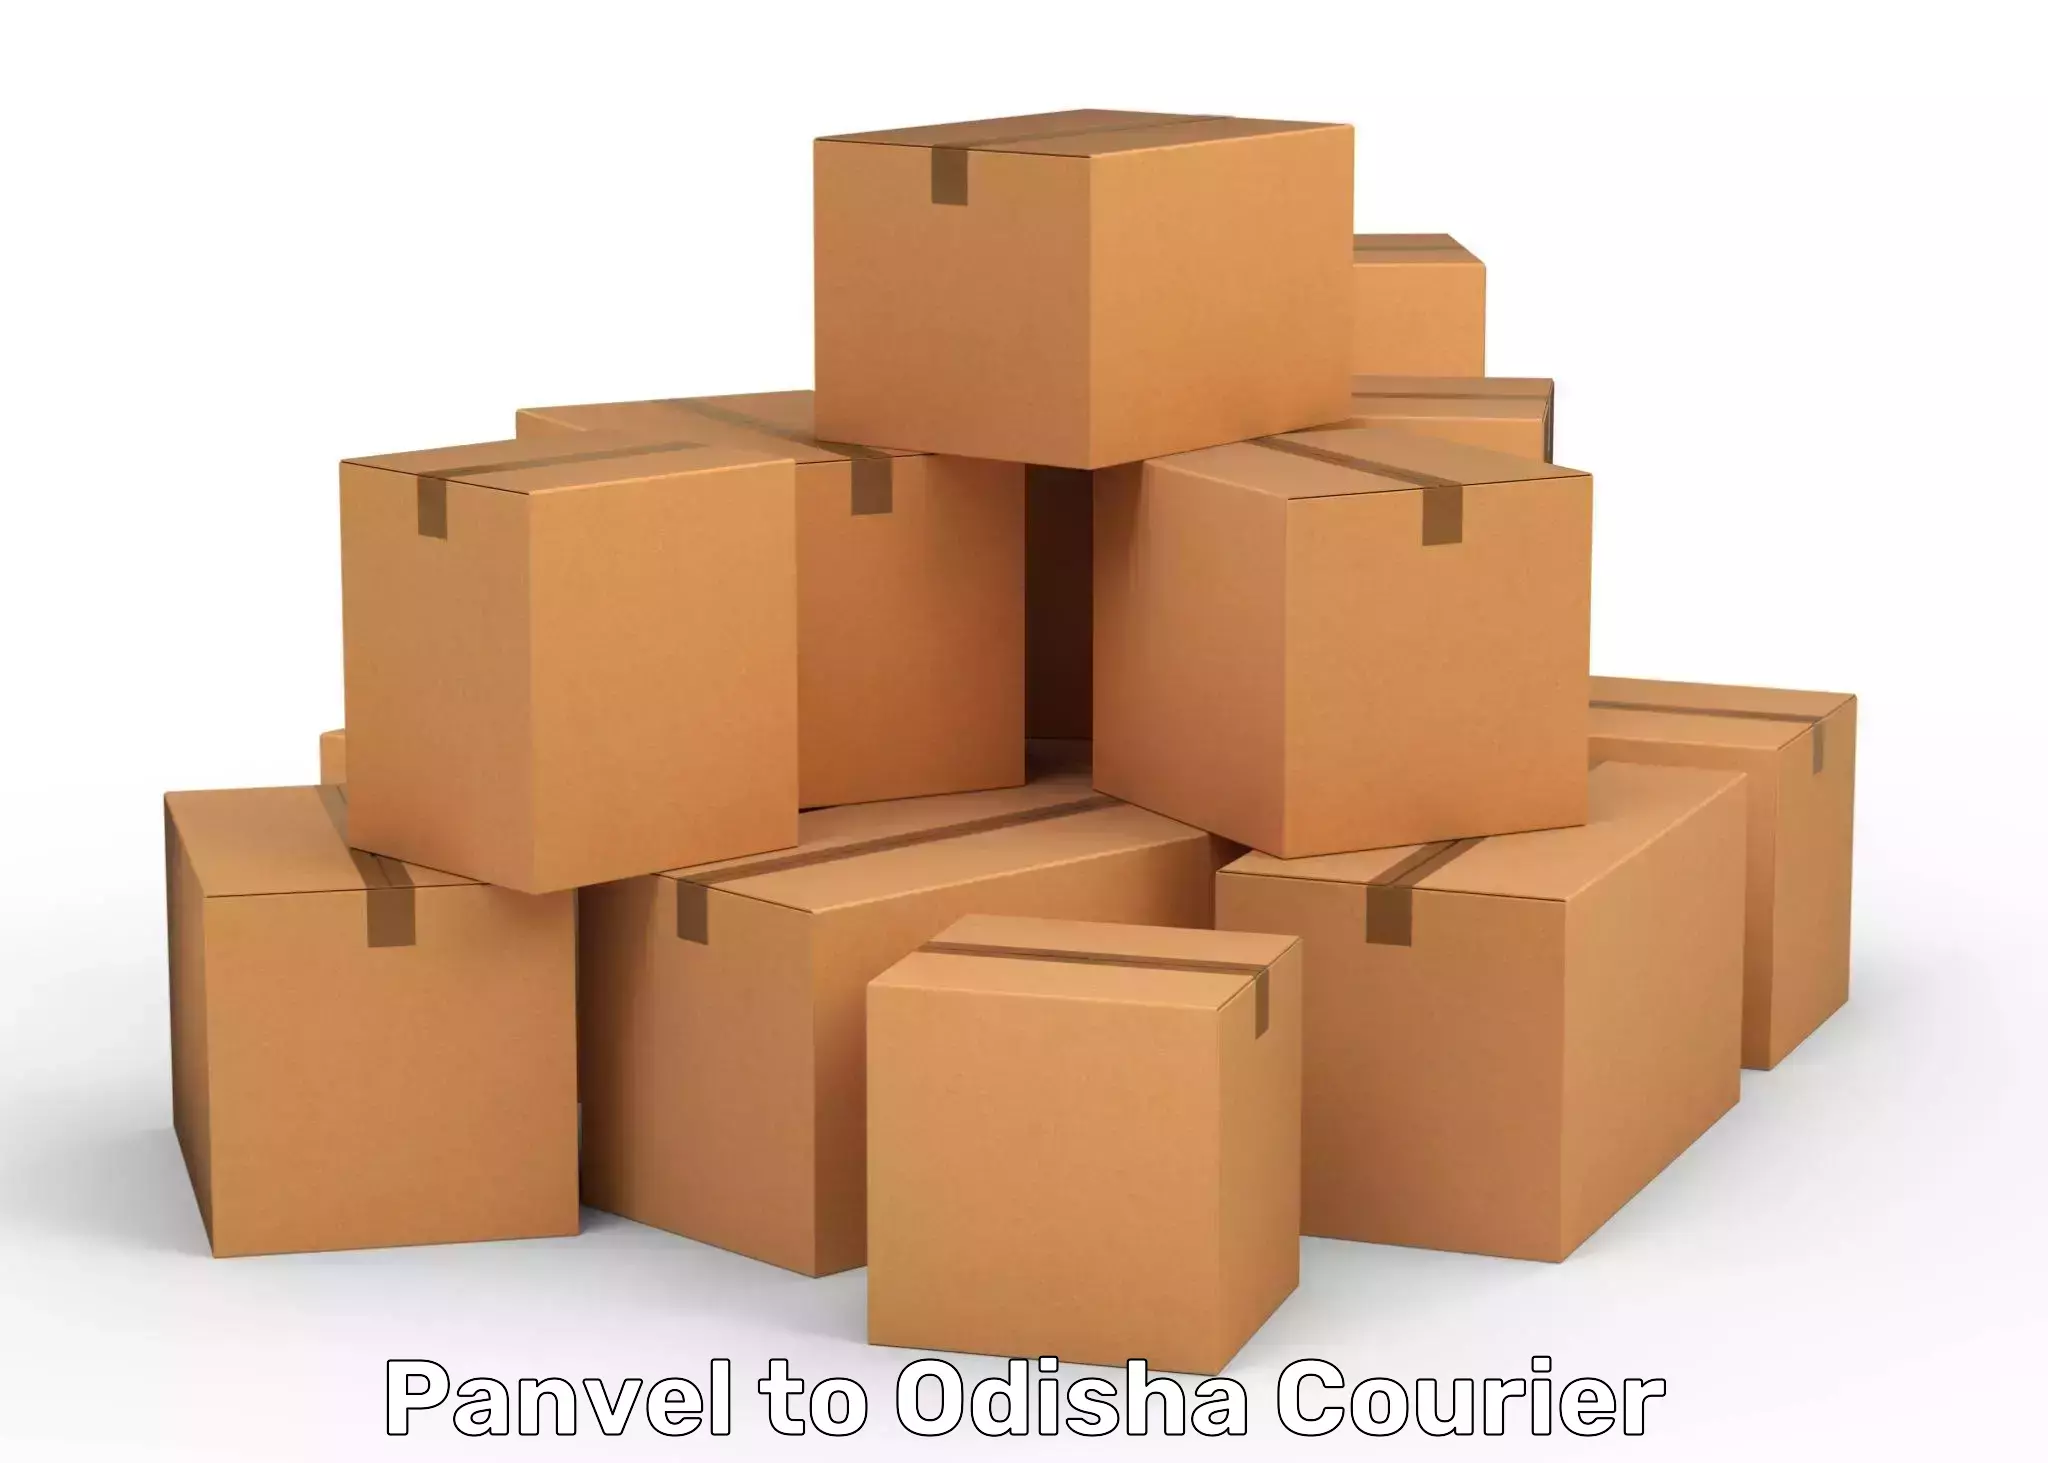 Efficient parcel service Panvel to Ghuntagadia